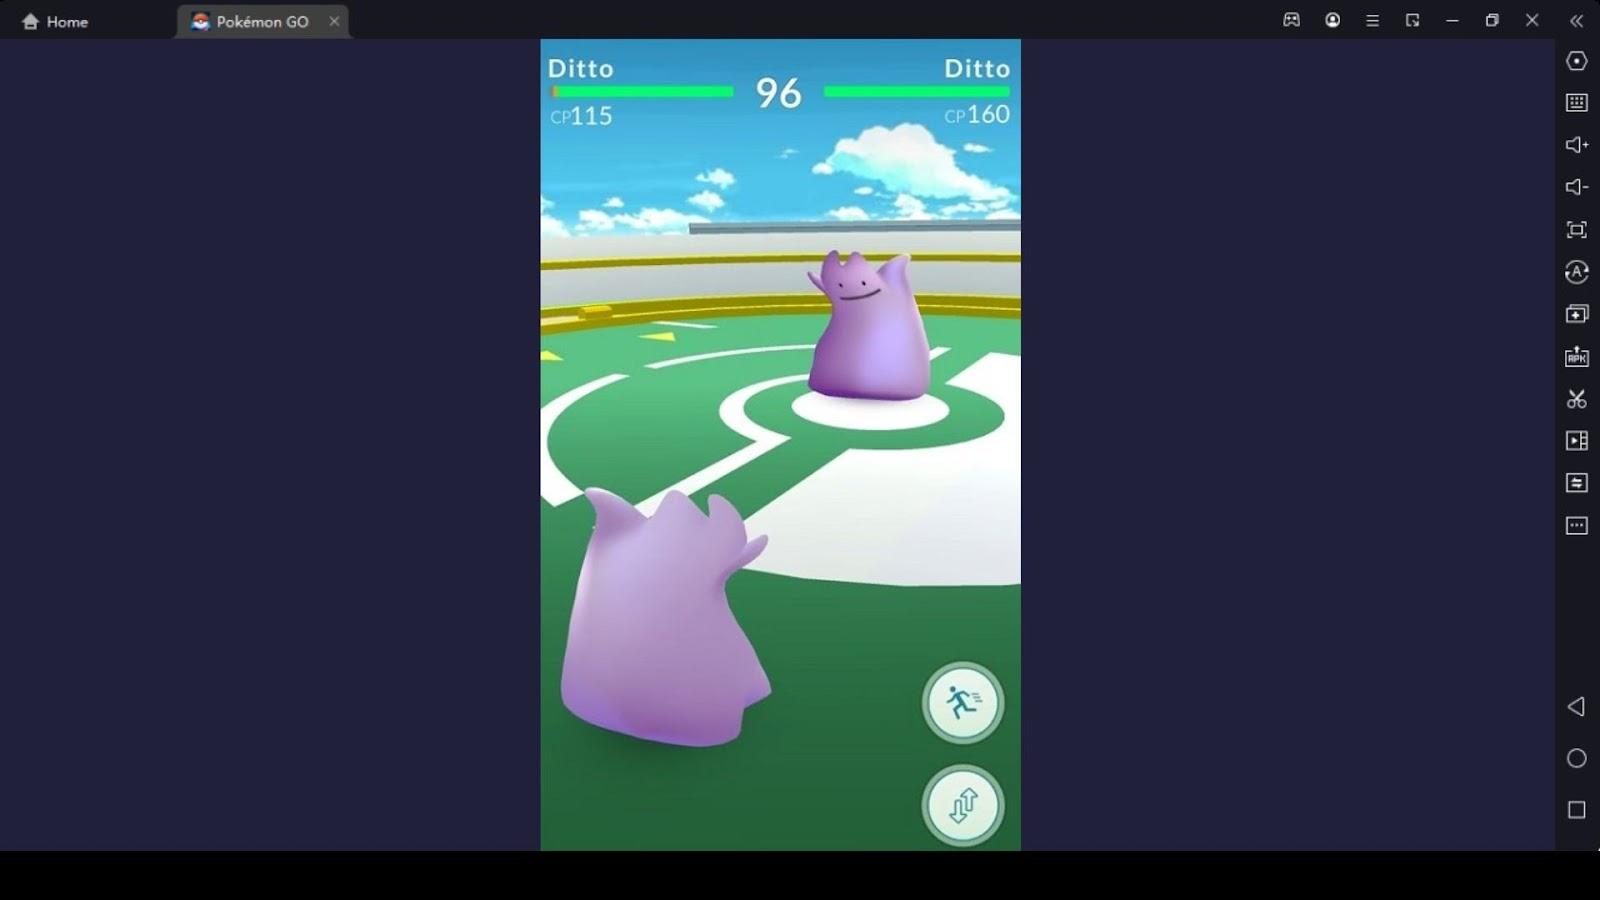 How to Catch Ditto Pokémon Go